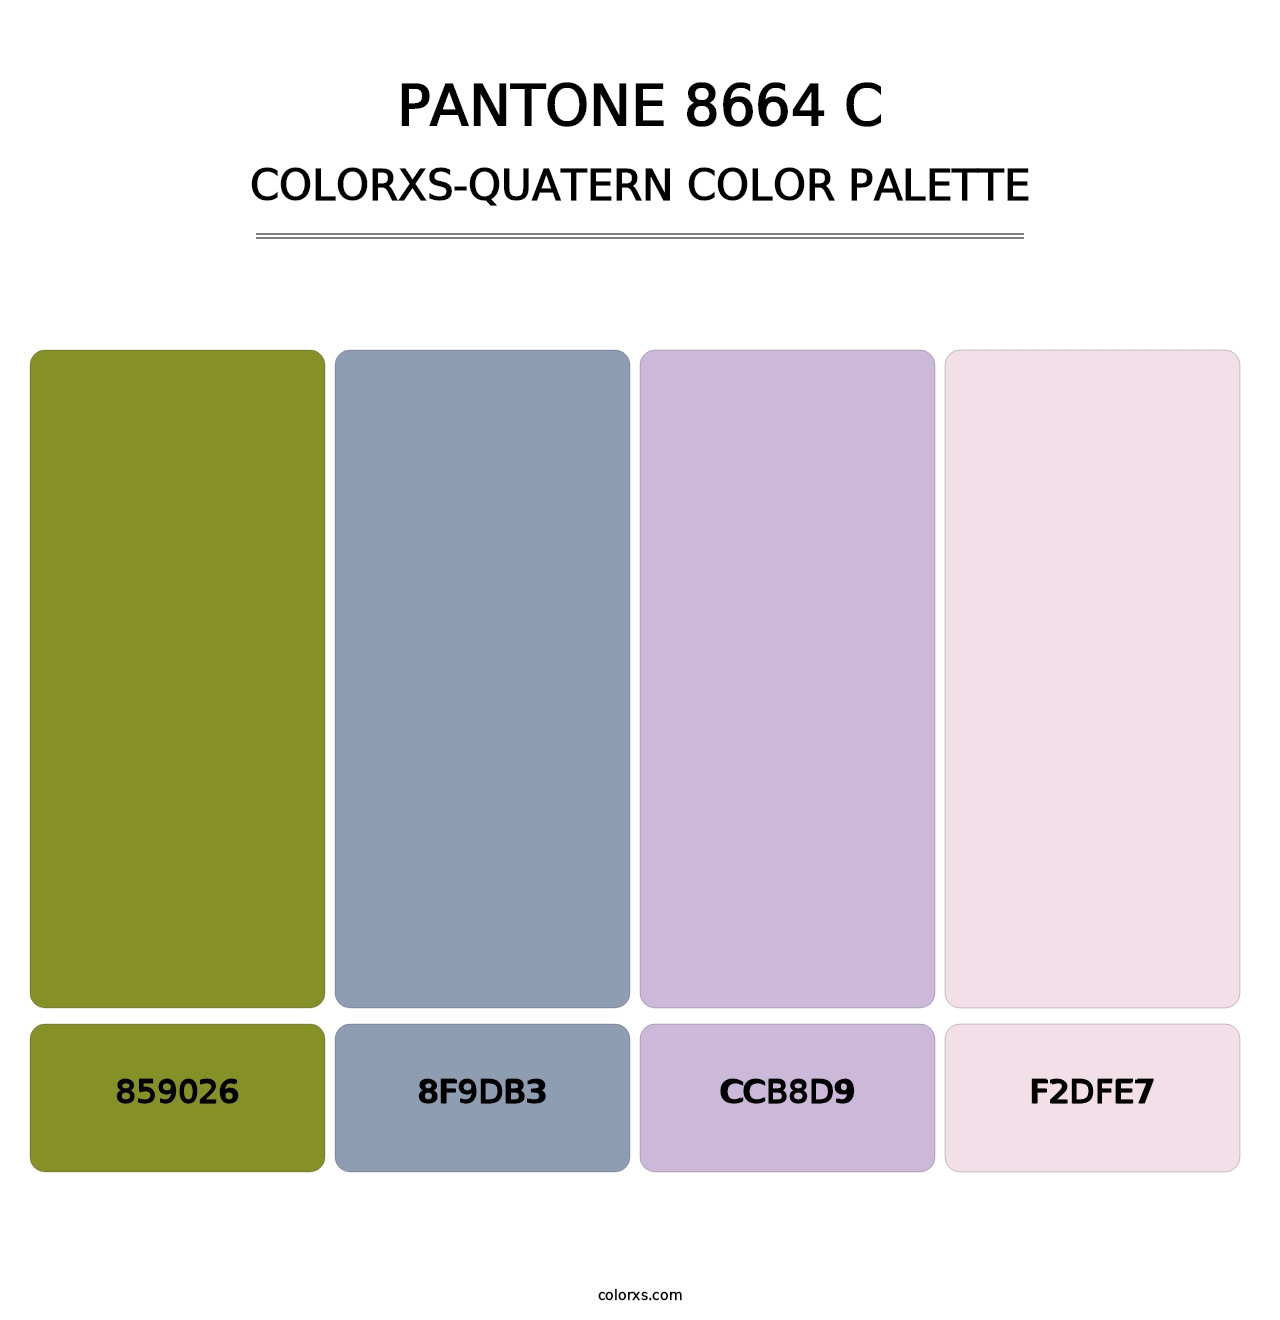 PANTONE 8664 C - Colorxs Quatern Palette